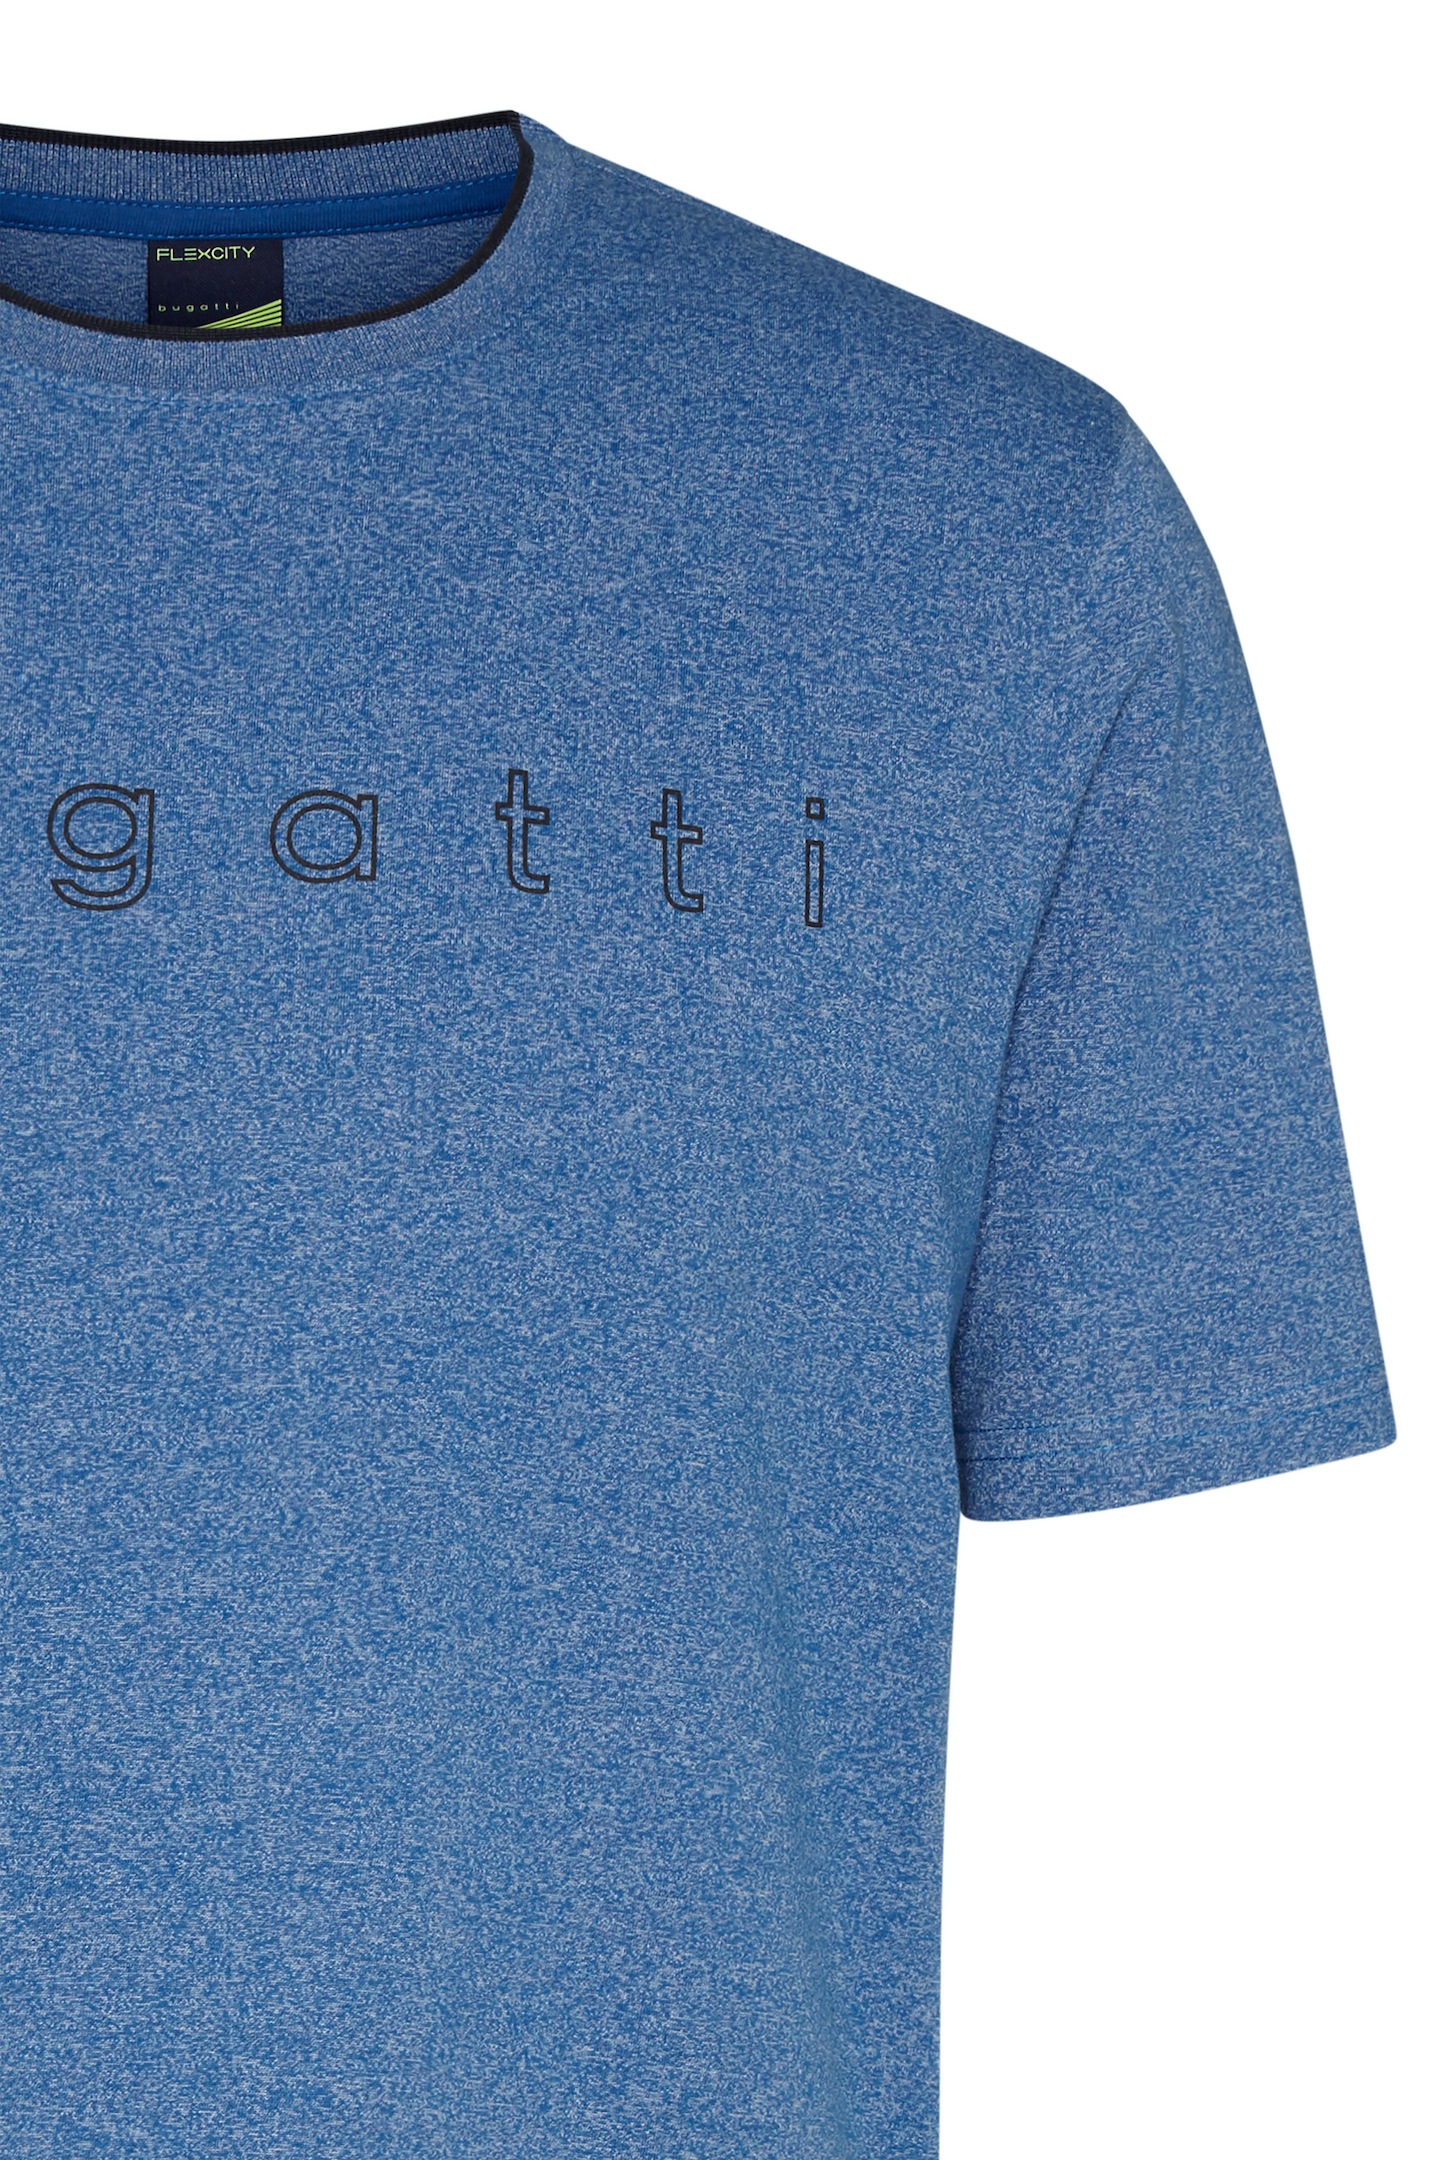 bugatti T-Shirt, mit bugatti kaufen Logo-Print großem online